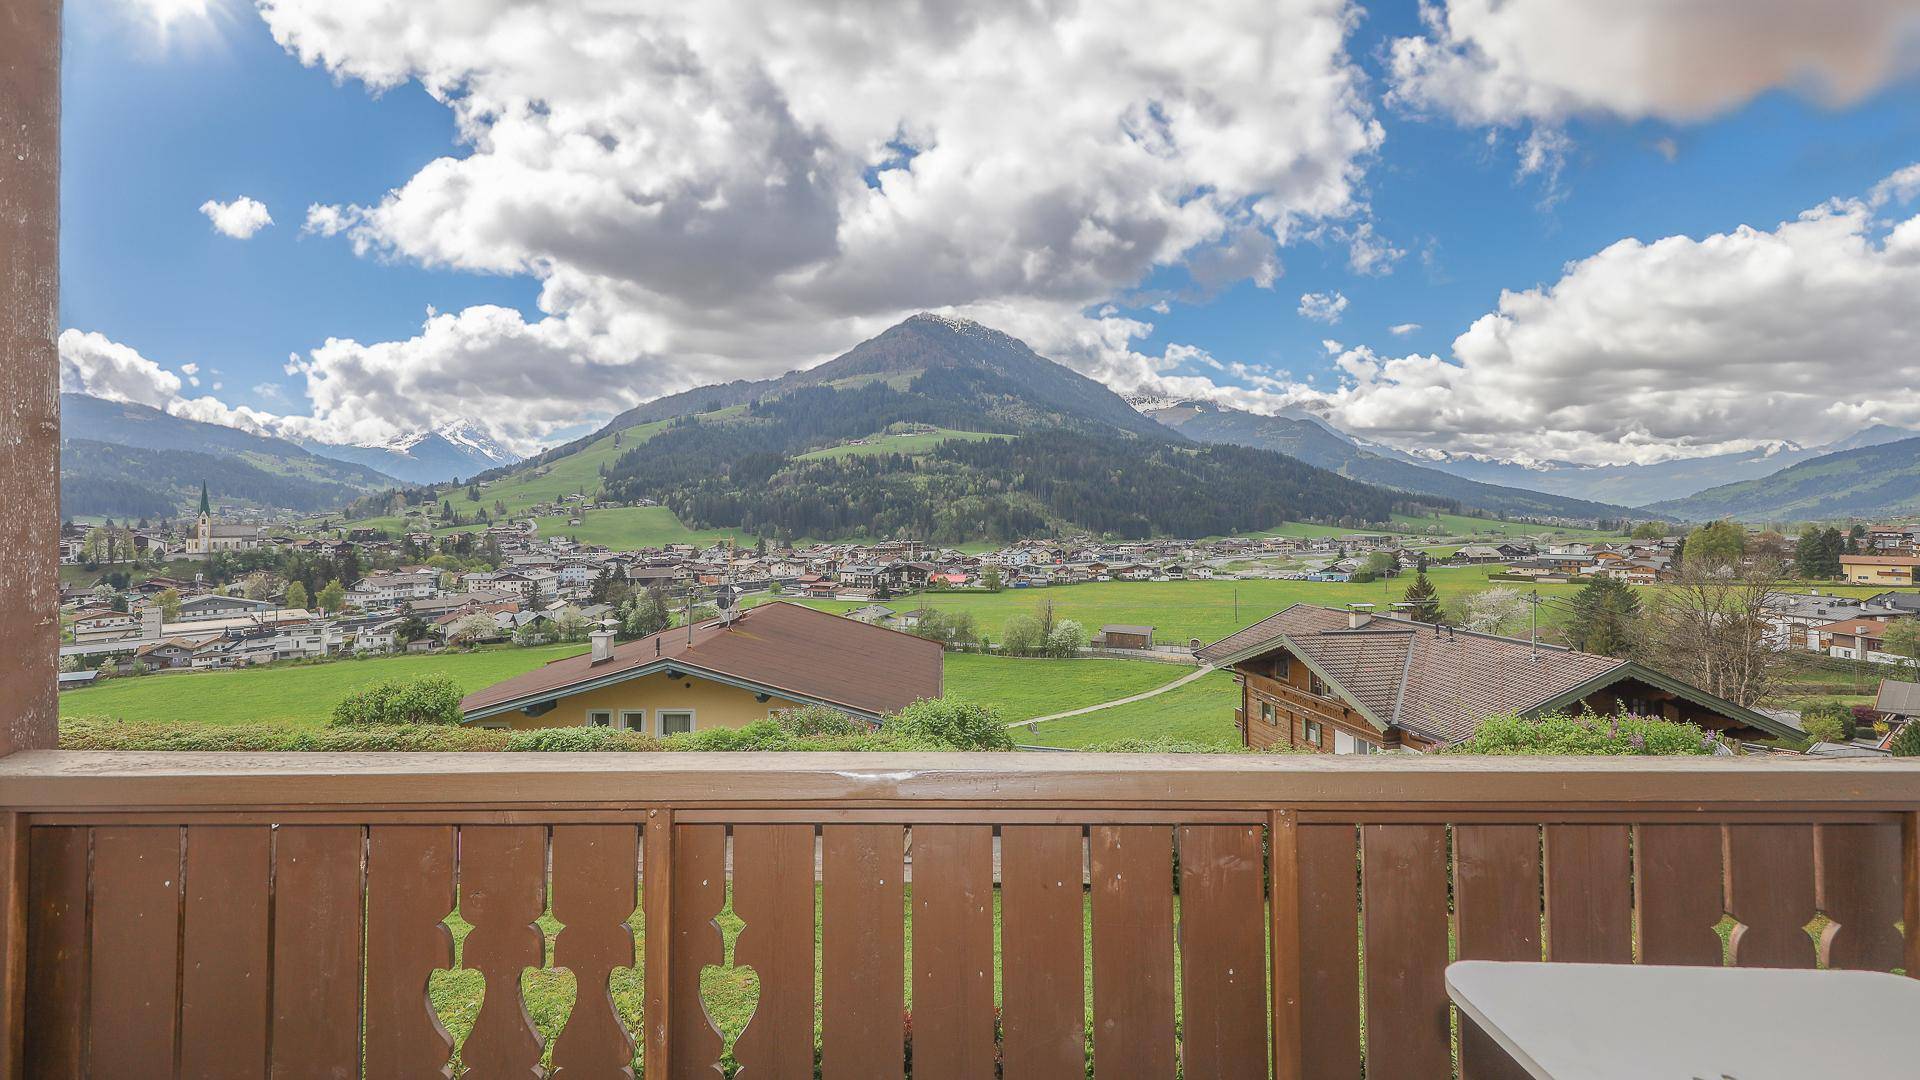 KITZIMMO-Freizeitwohnsitz in Toplage kaufen - Immobilien Kirchberg in Tirol.